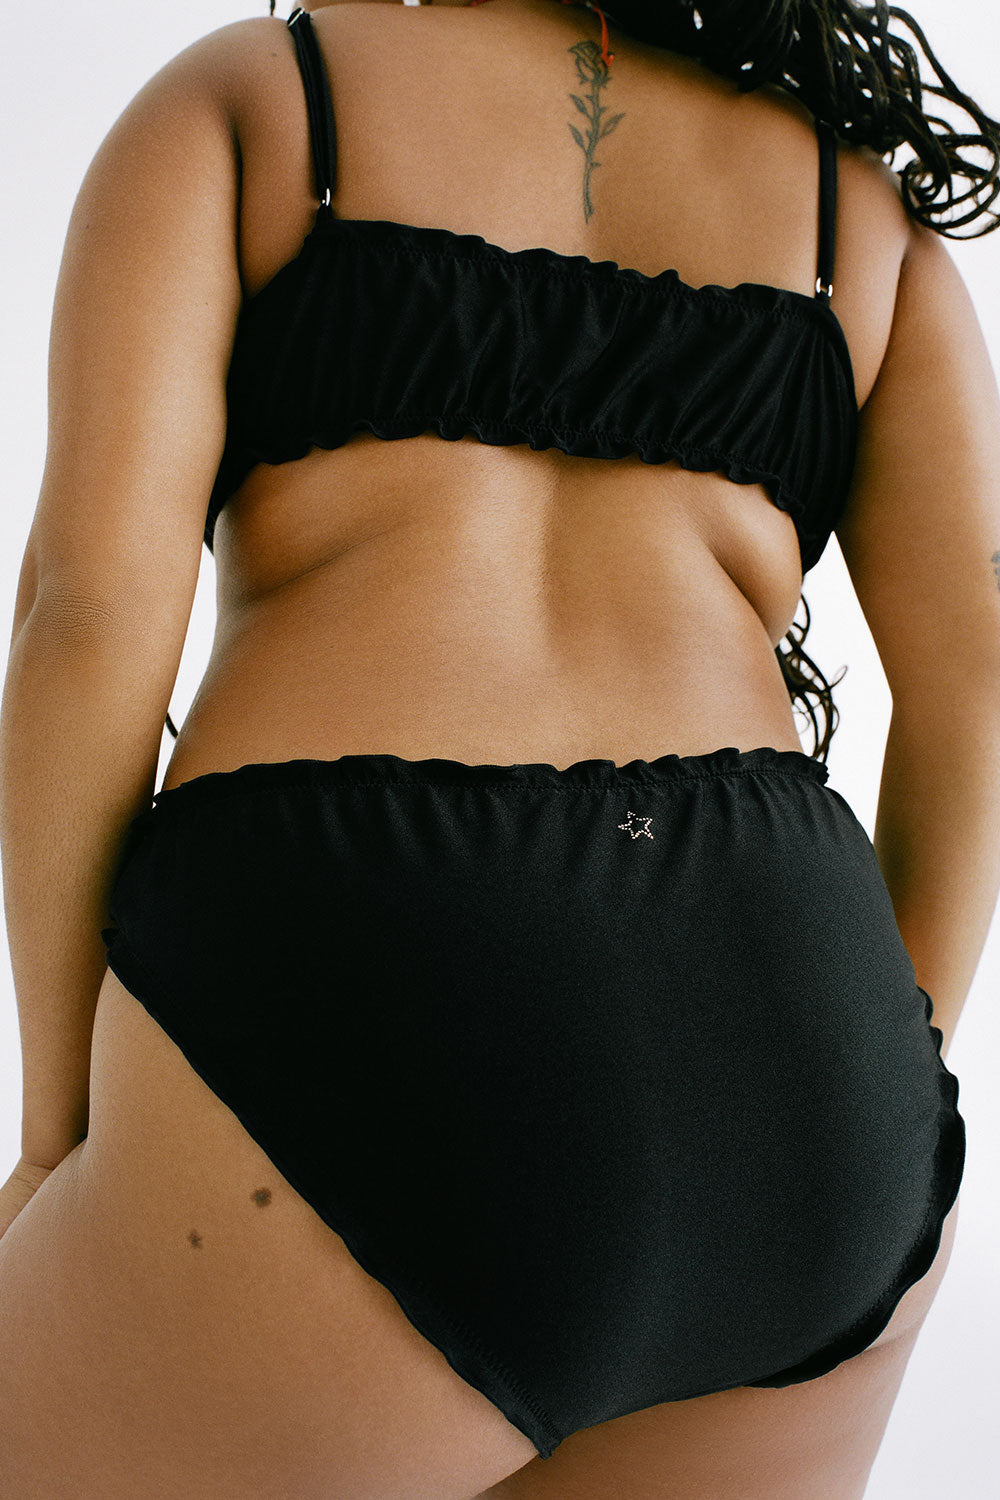 Arabelle Shine Full Coverage Bikini Bottom Black Extended